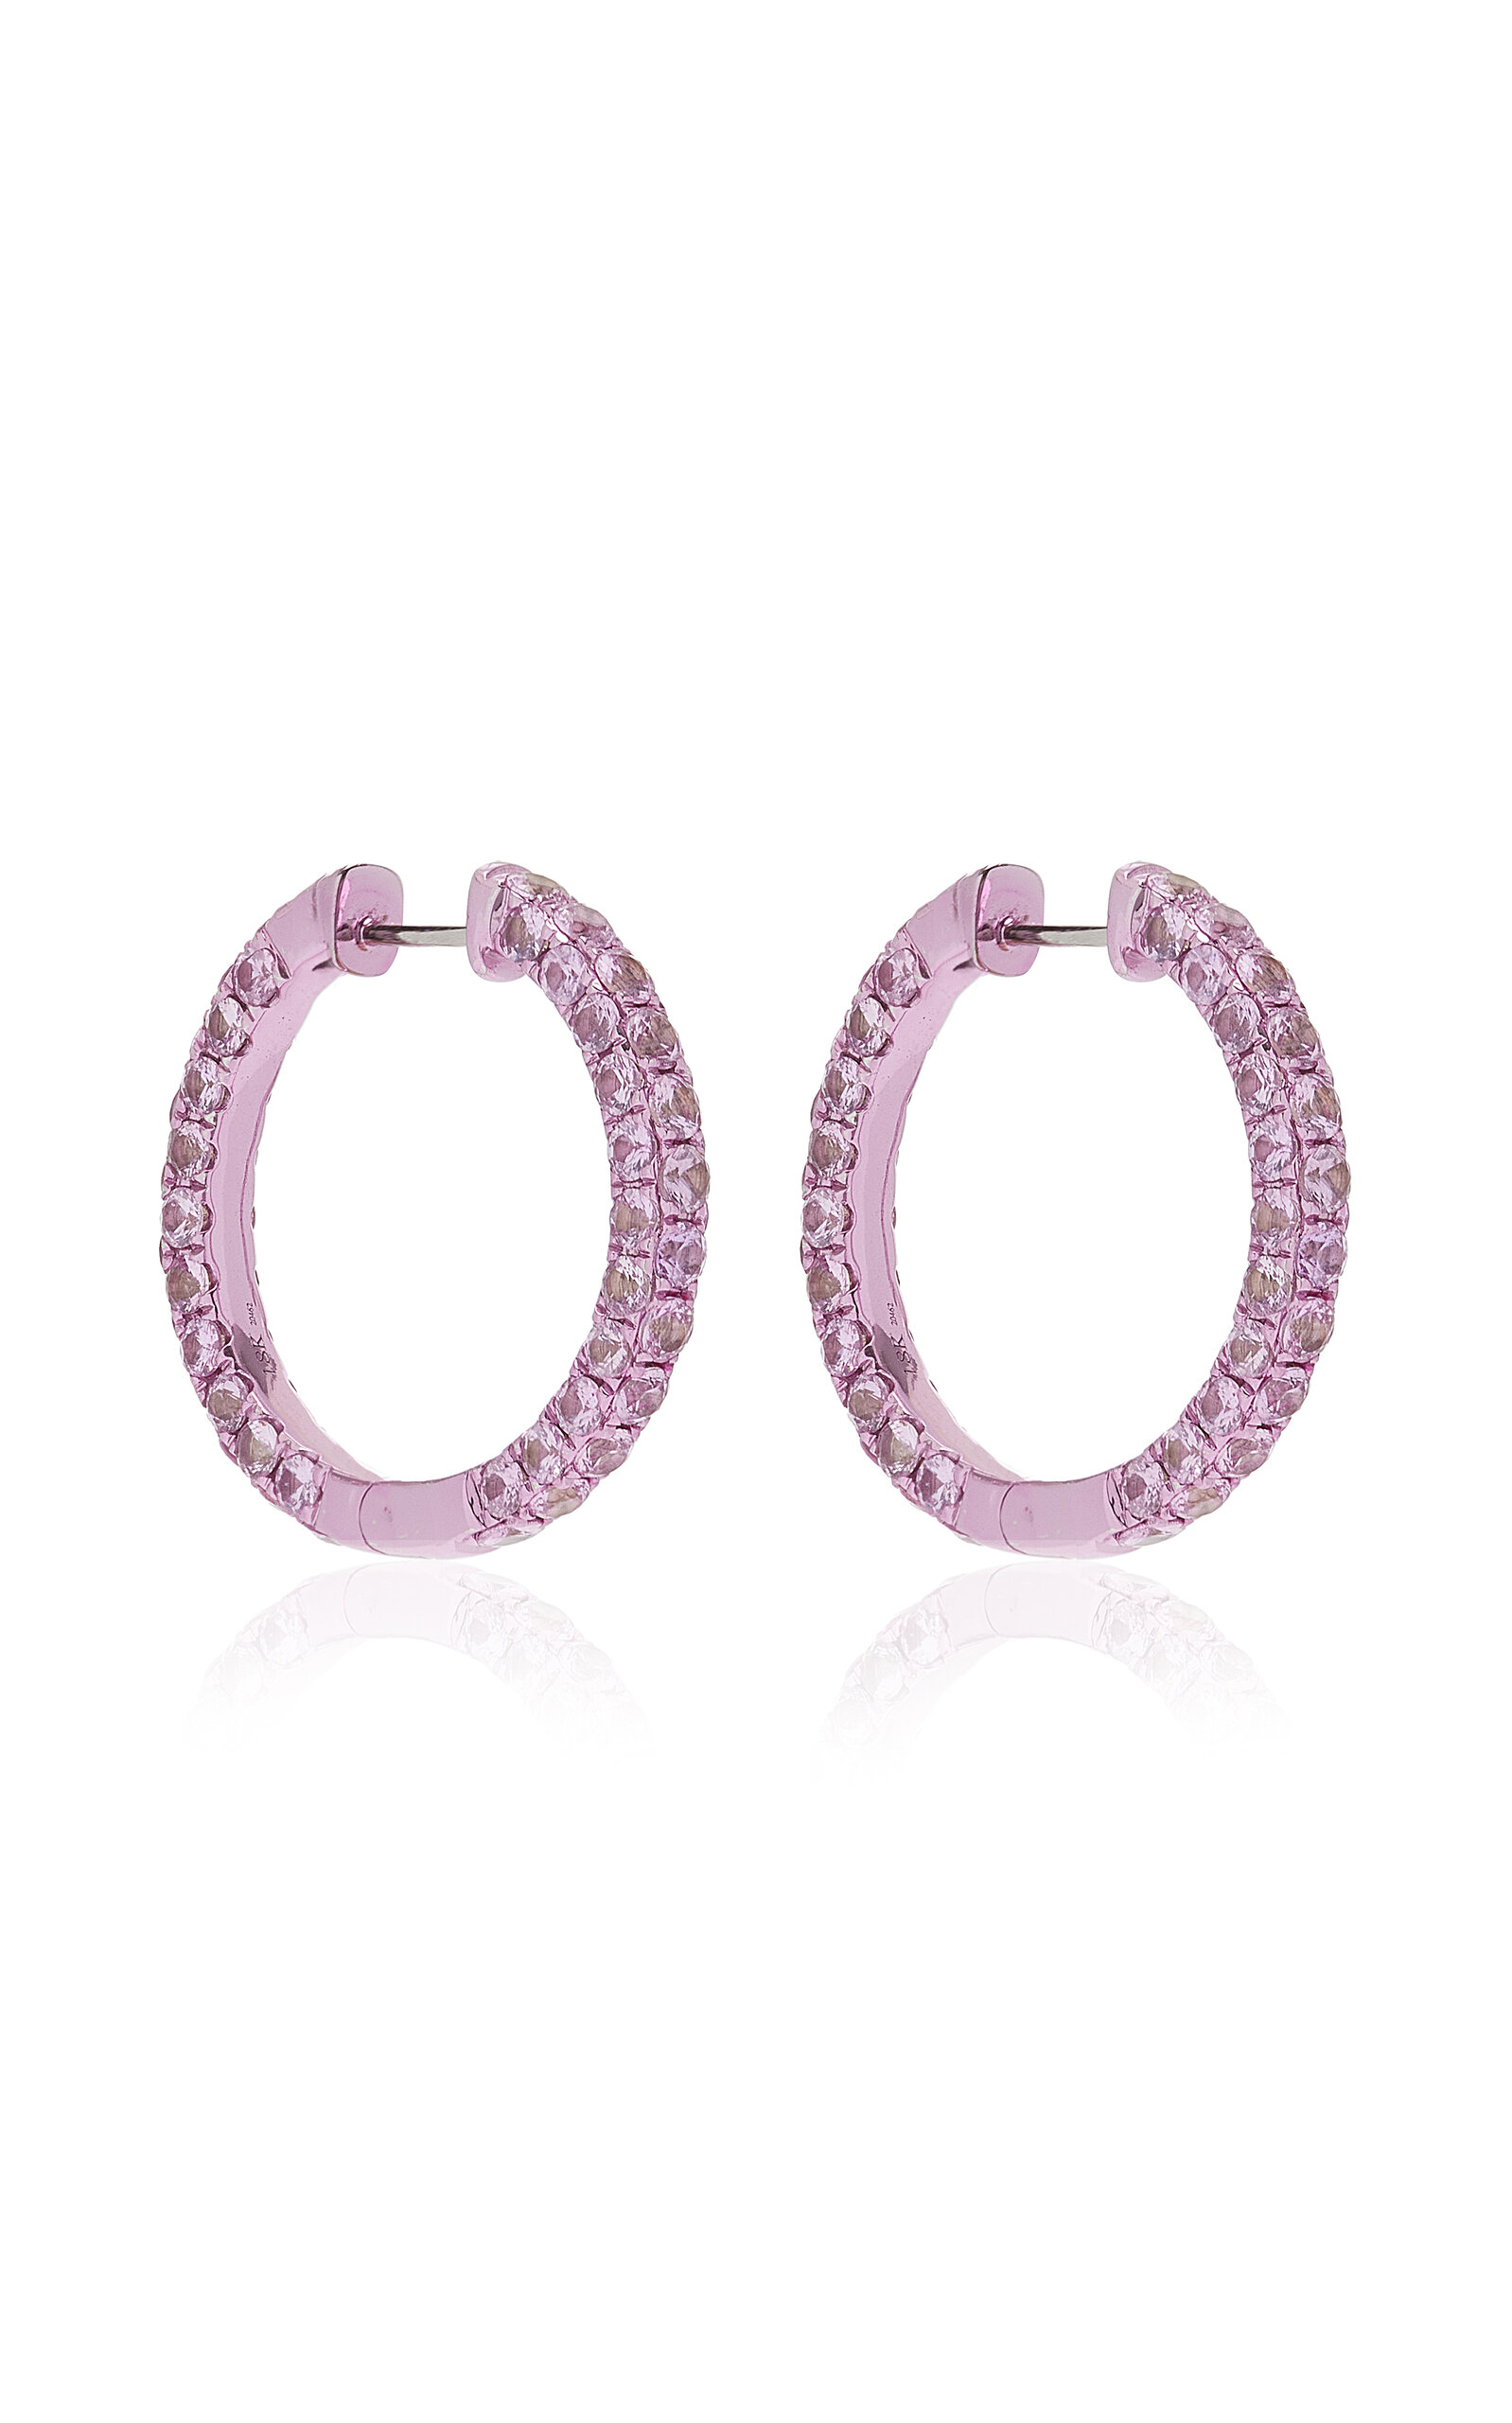 Large 3 Sided Pink-Rhodium Sapphire Hoop Earrings